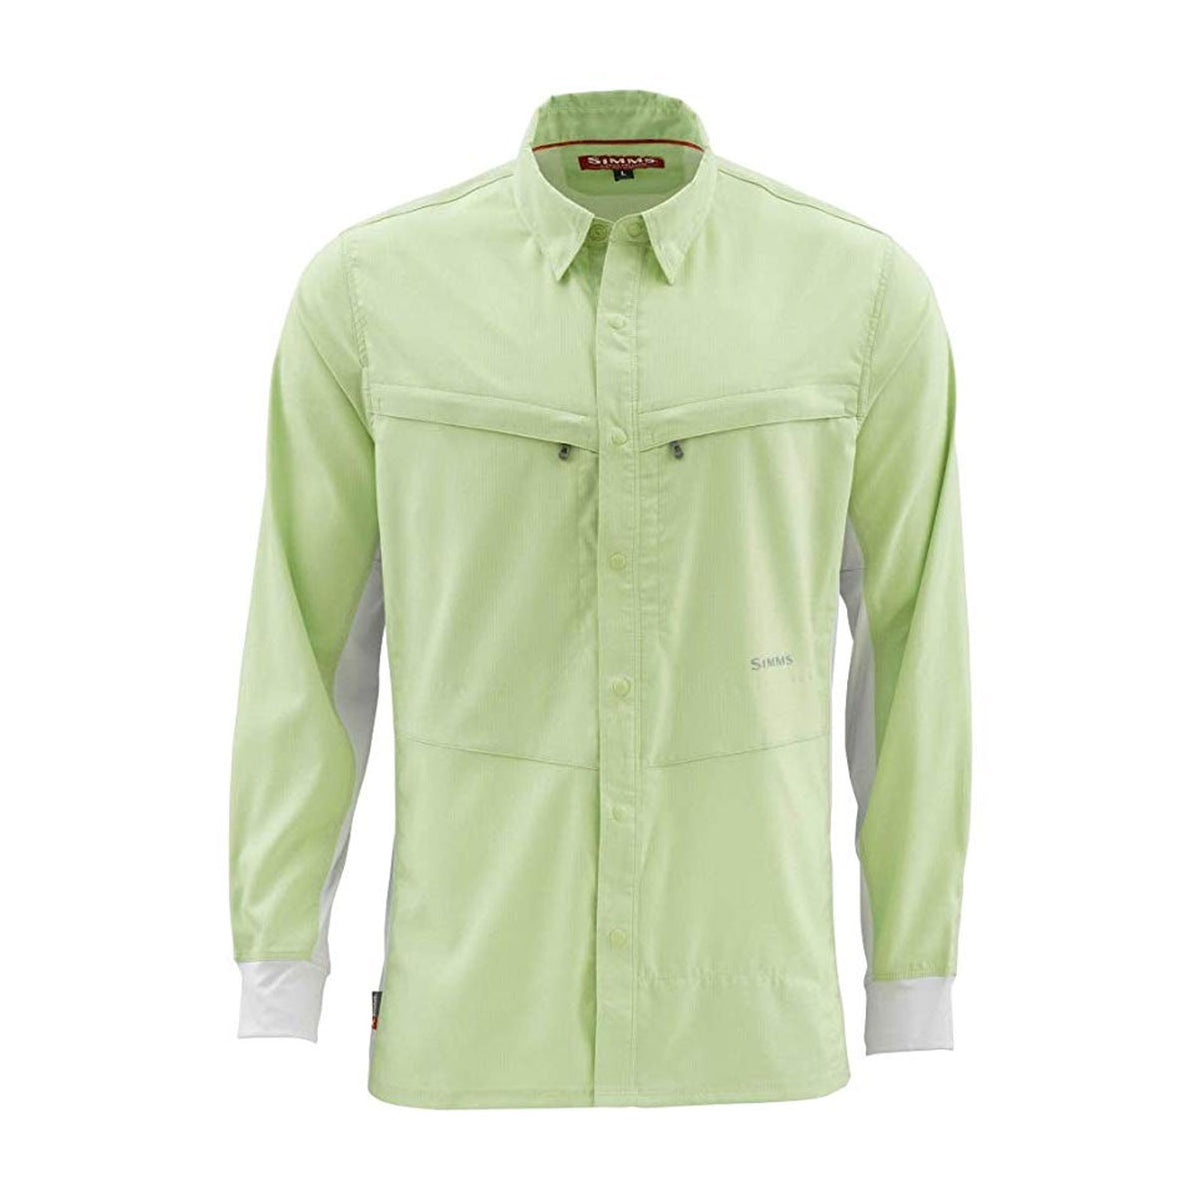 Simms Intruder BiComp Long Sleeve Shirt - Light Green